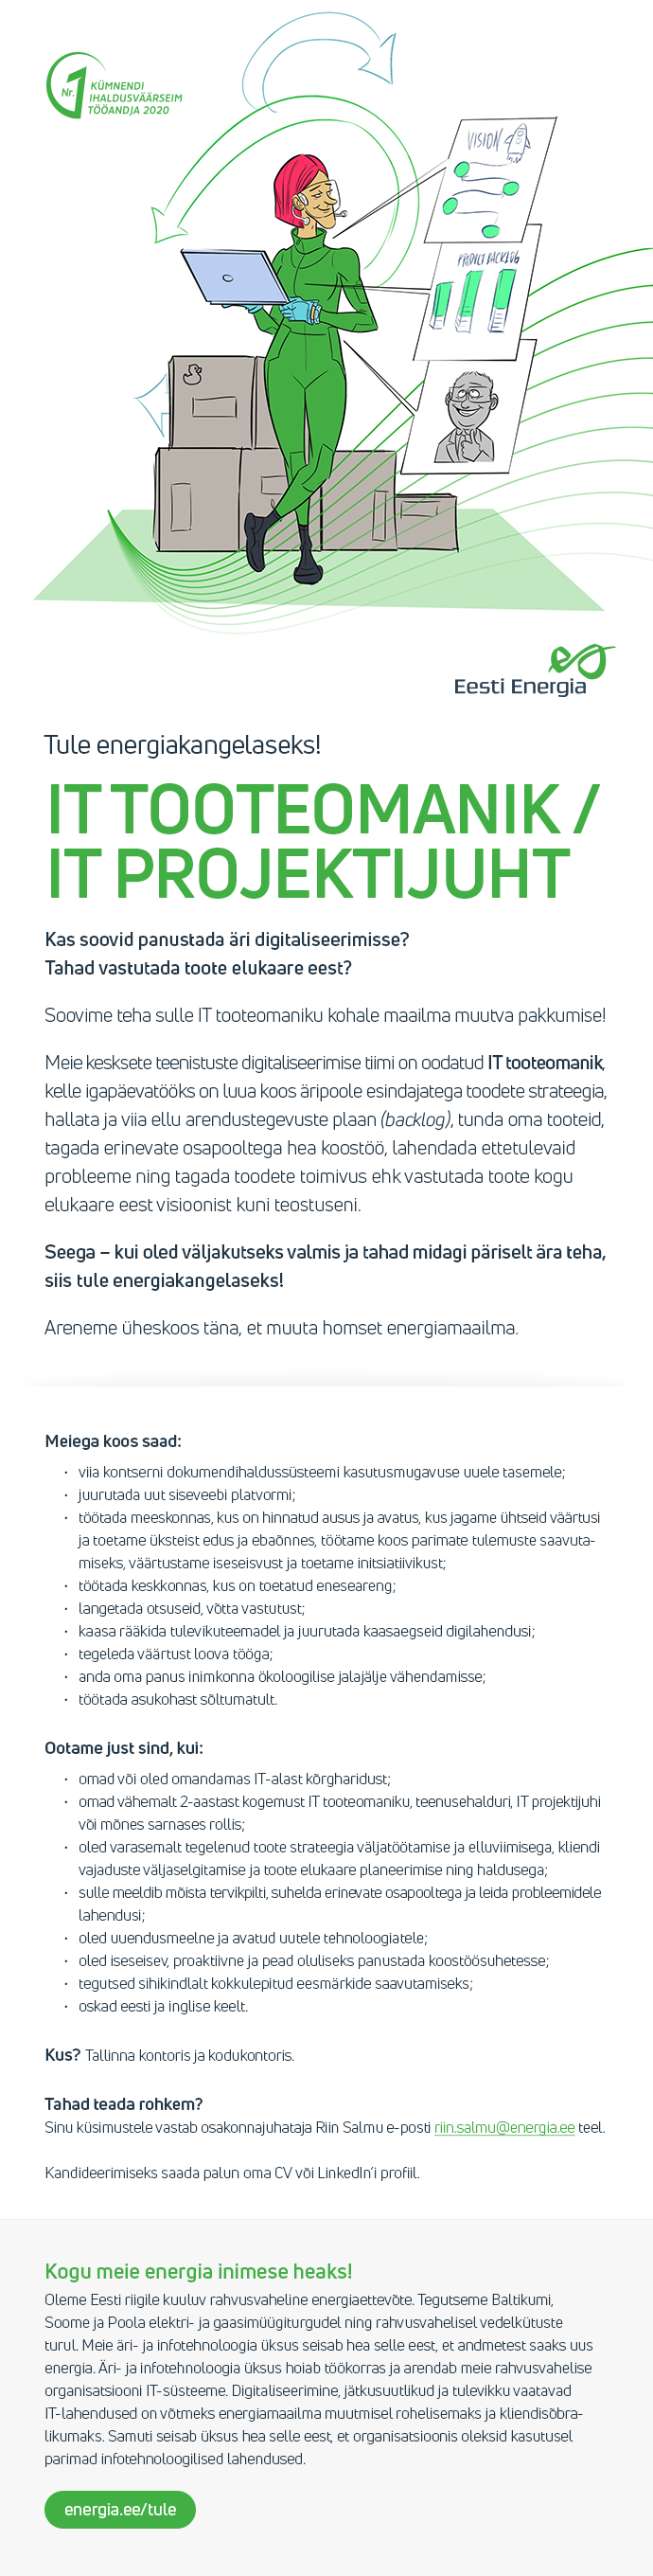 Eesti Energia AS IT TOOTEOMANIK/IT PROJEKTIJUHT